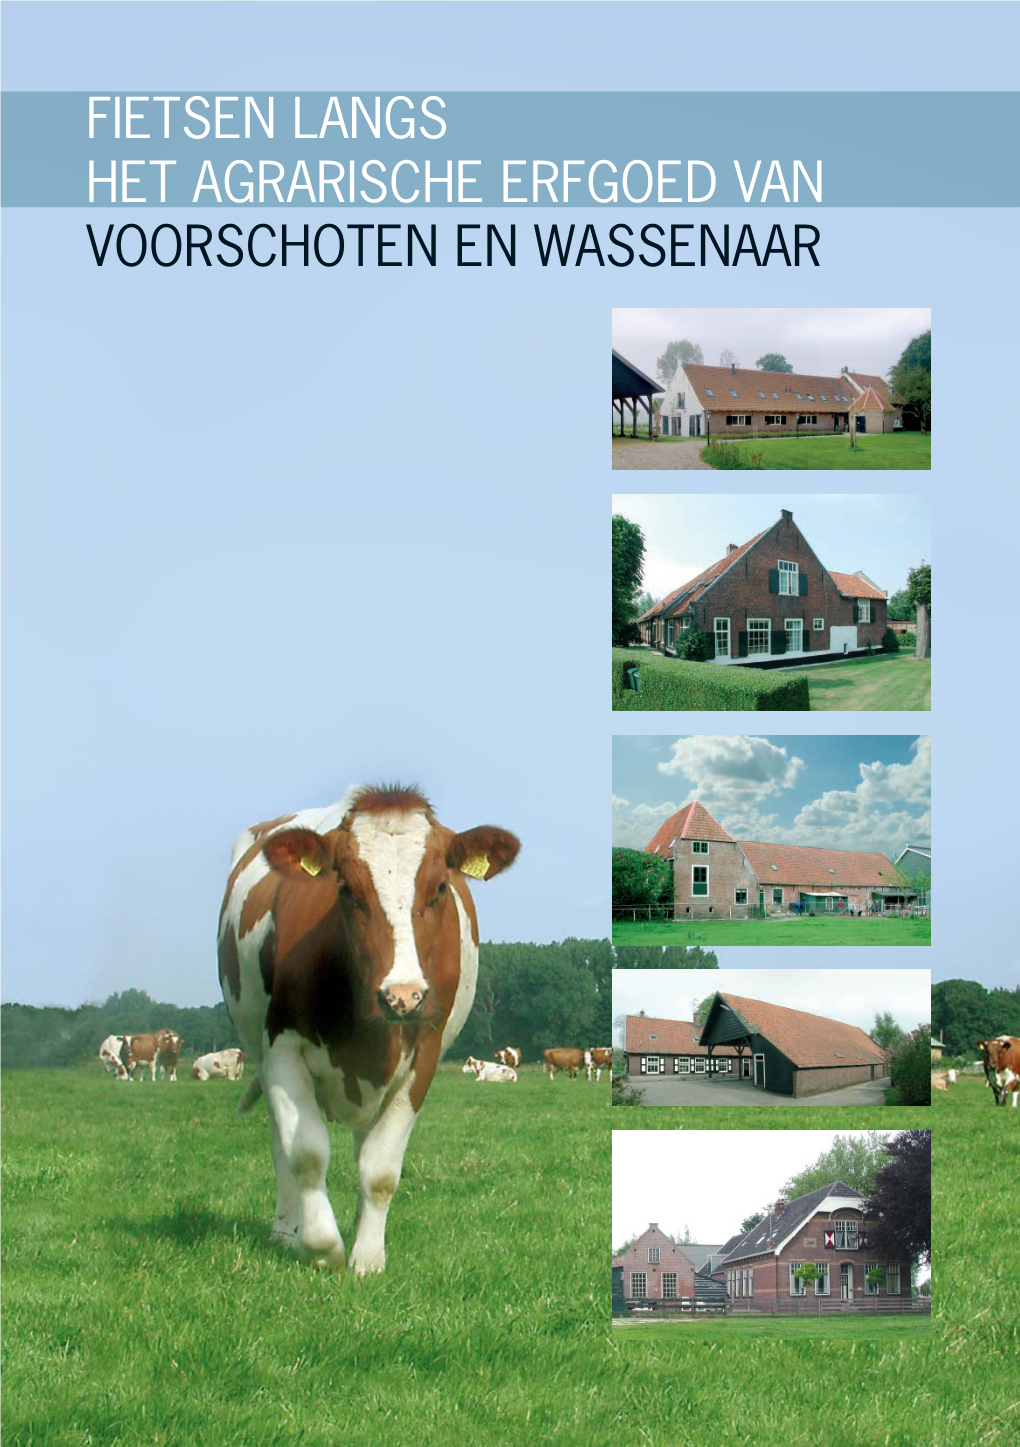 Fietsen Langs Het Agrarische Erfgoed Van Voorschoten En Wassenaar 2 3 Inleiding Het Boerenerf Nader Bekeken